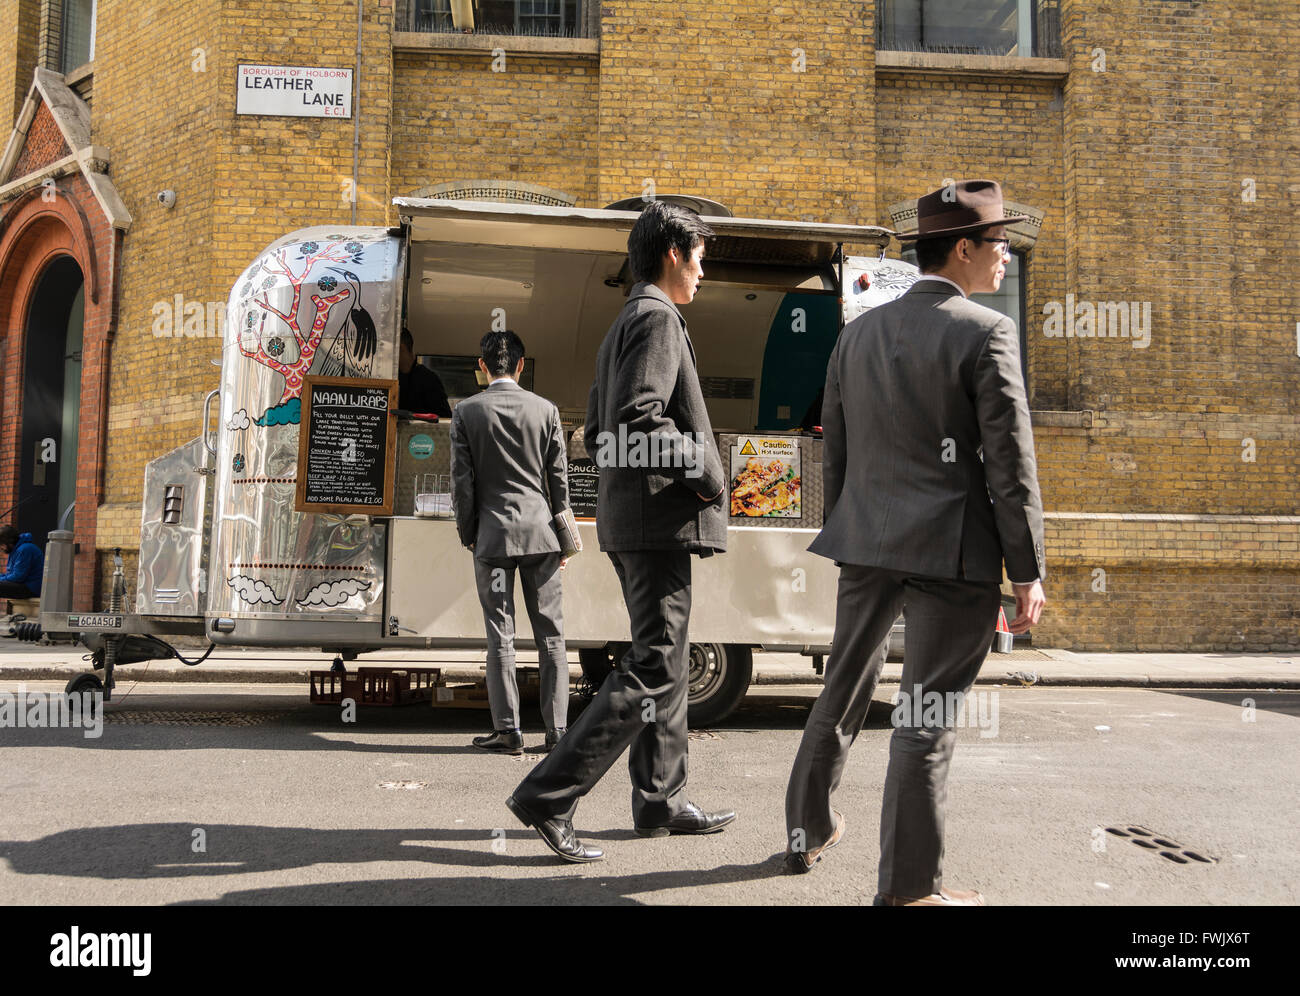 Eine elegant gekleidete Chinesischer Mann kauft eine Naan springen von einem glänzenden Revival Trailer street Verkäufer auf Leder Lane in London, UK. Stockfoto